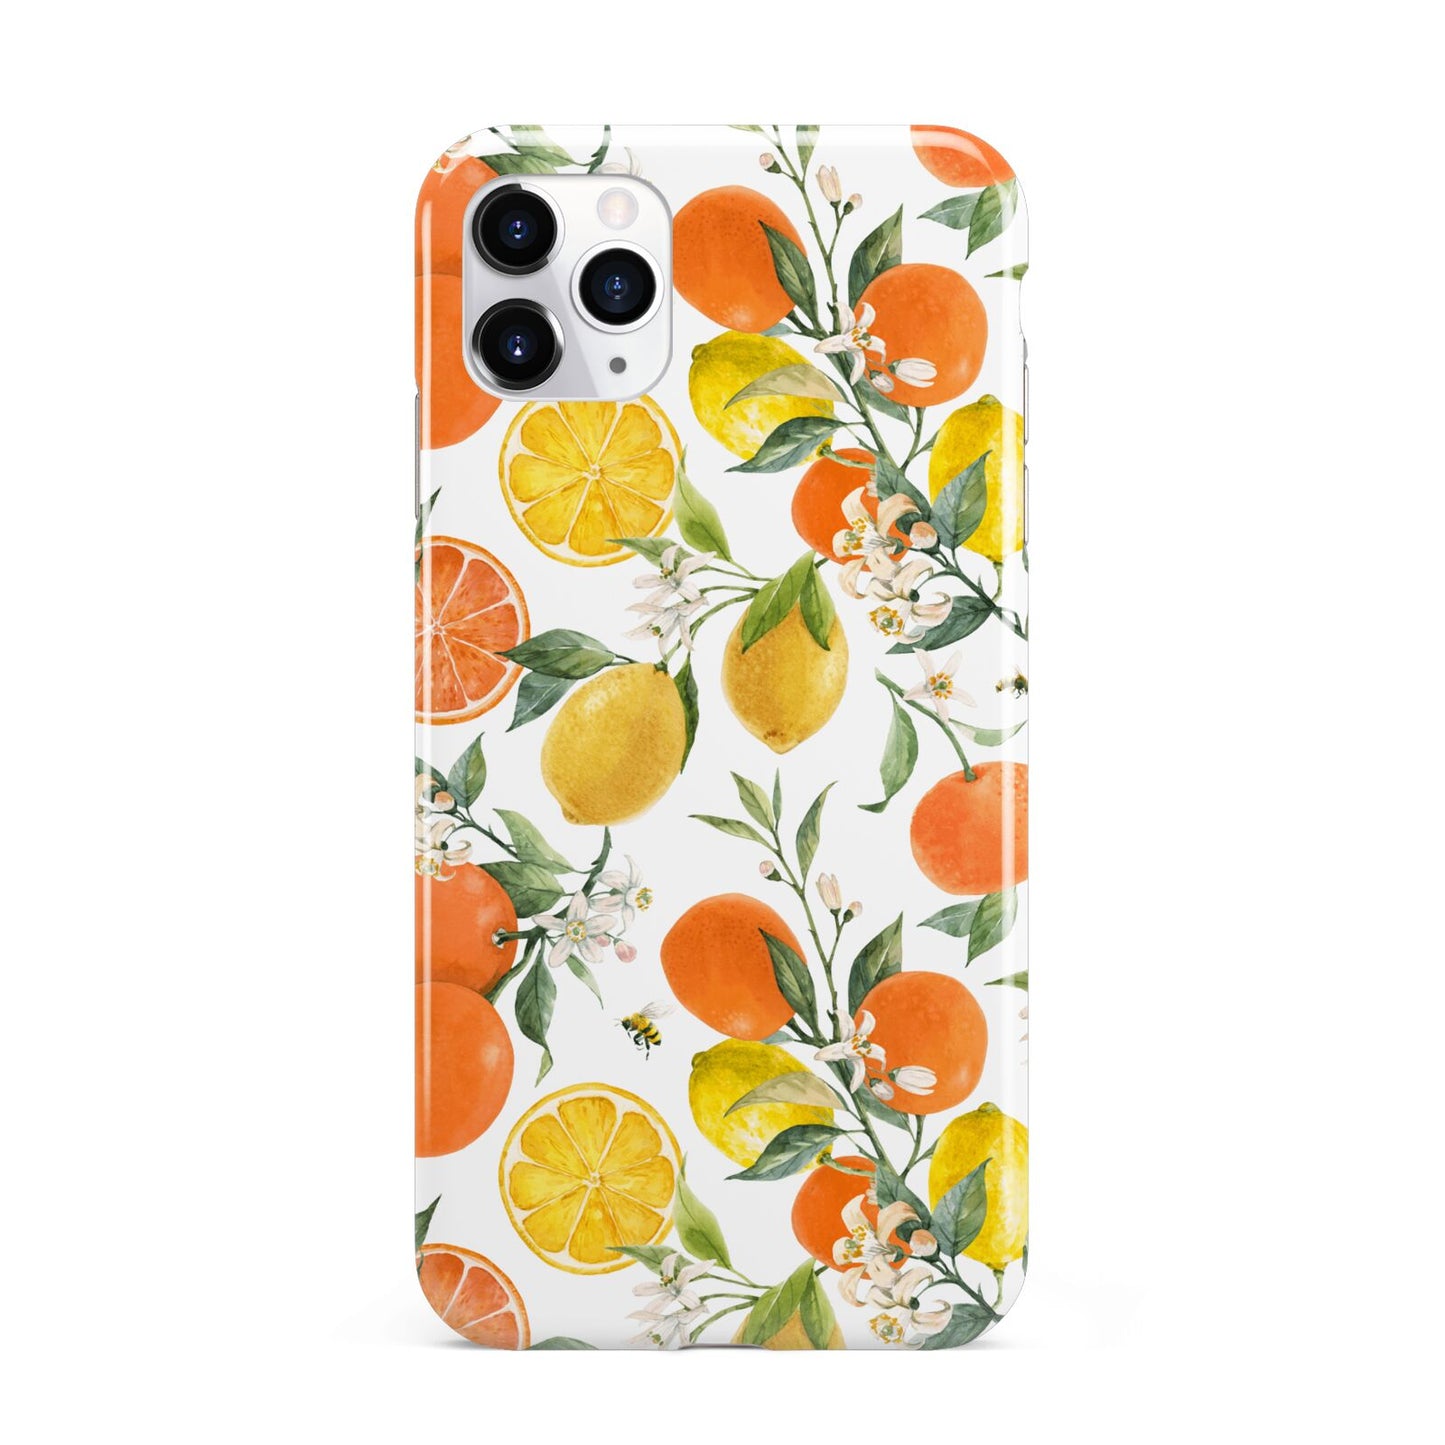 Lemons and Oranges iPhone 11 Pro Max 3D Tough Case